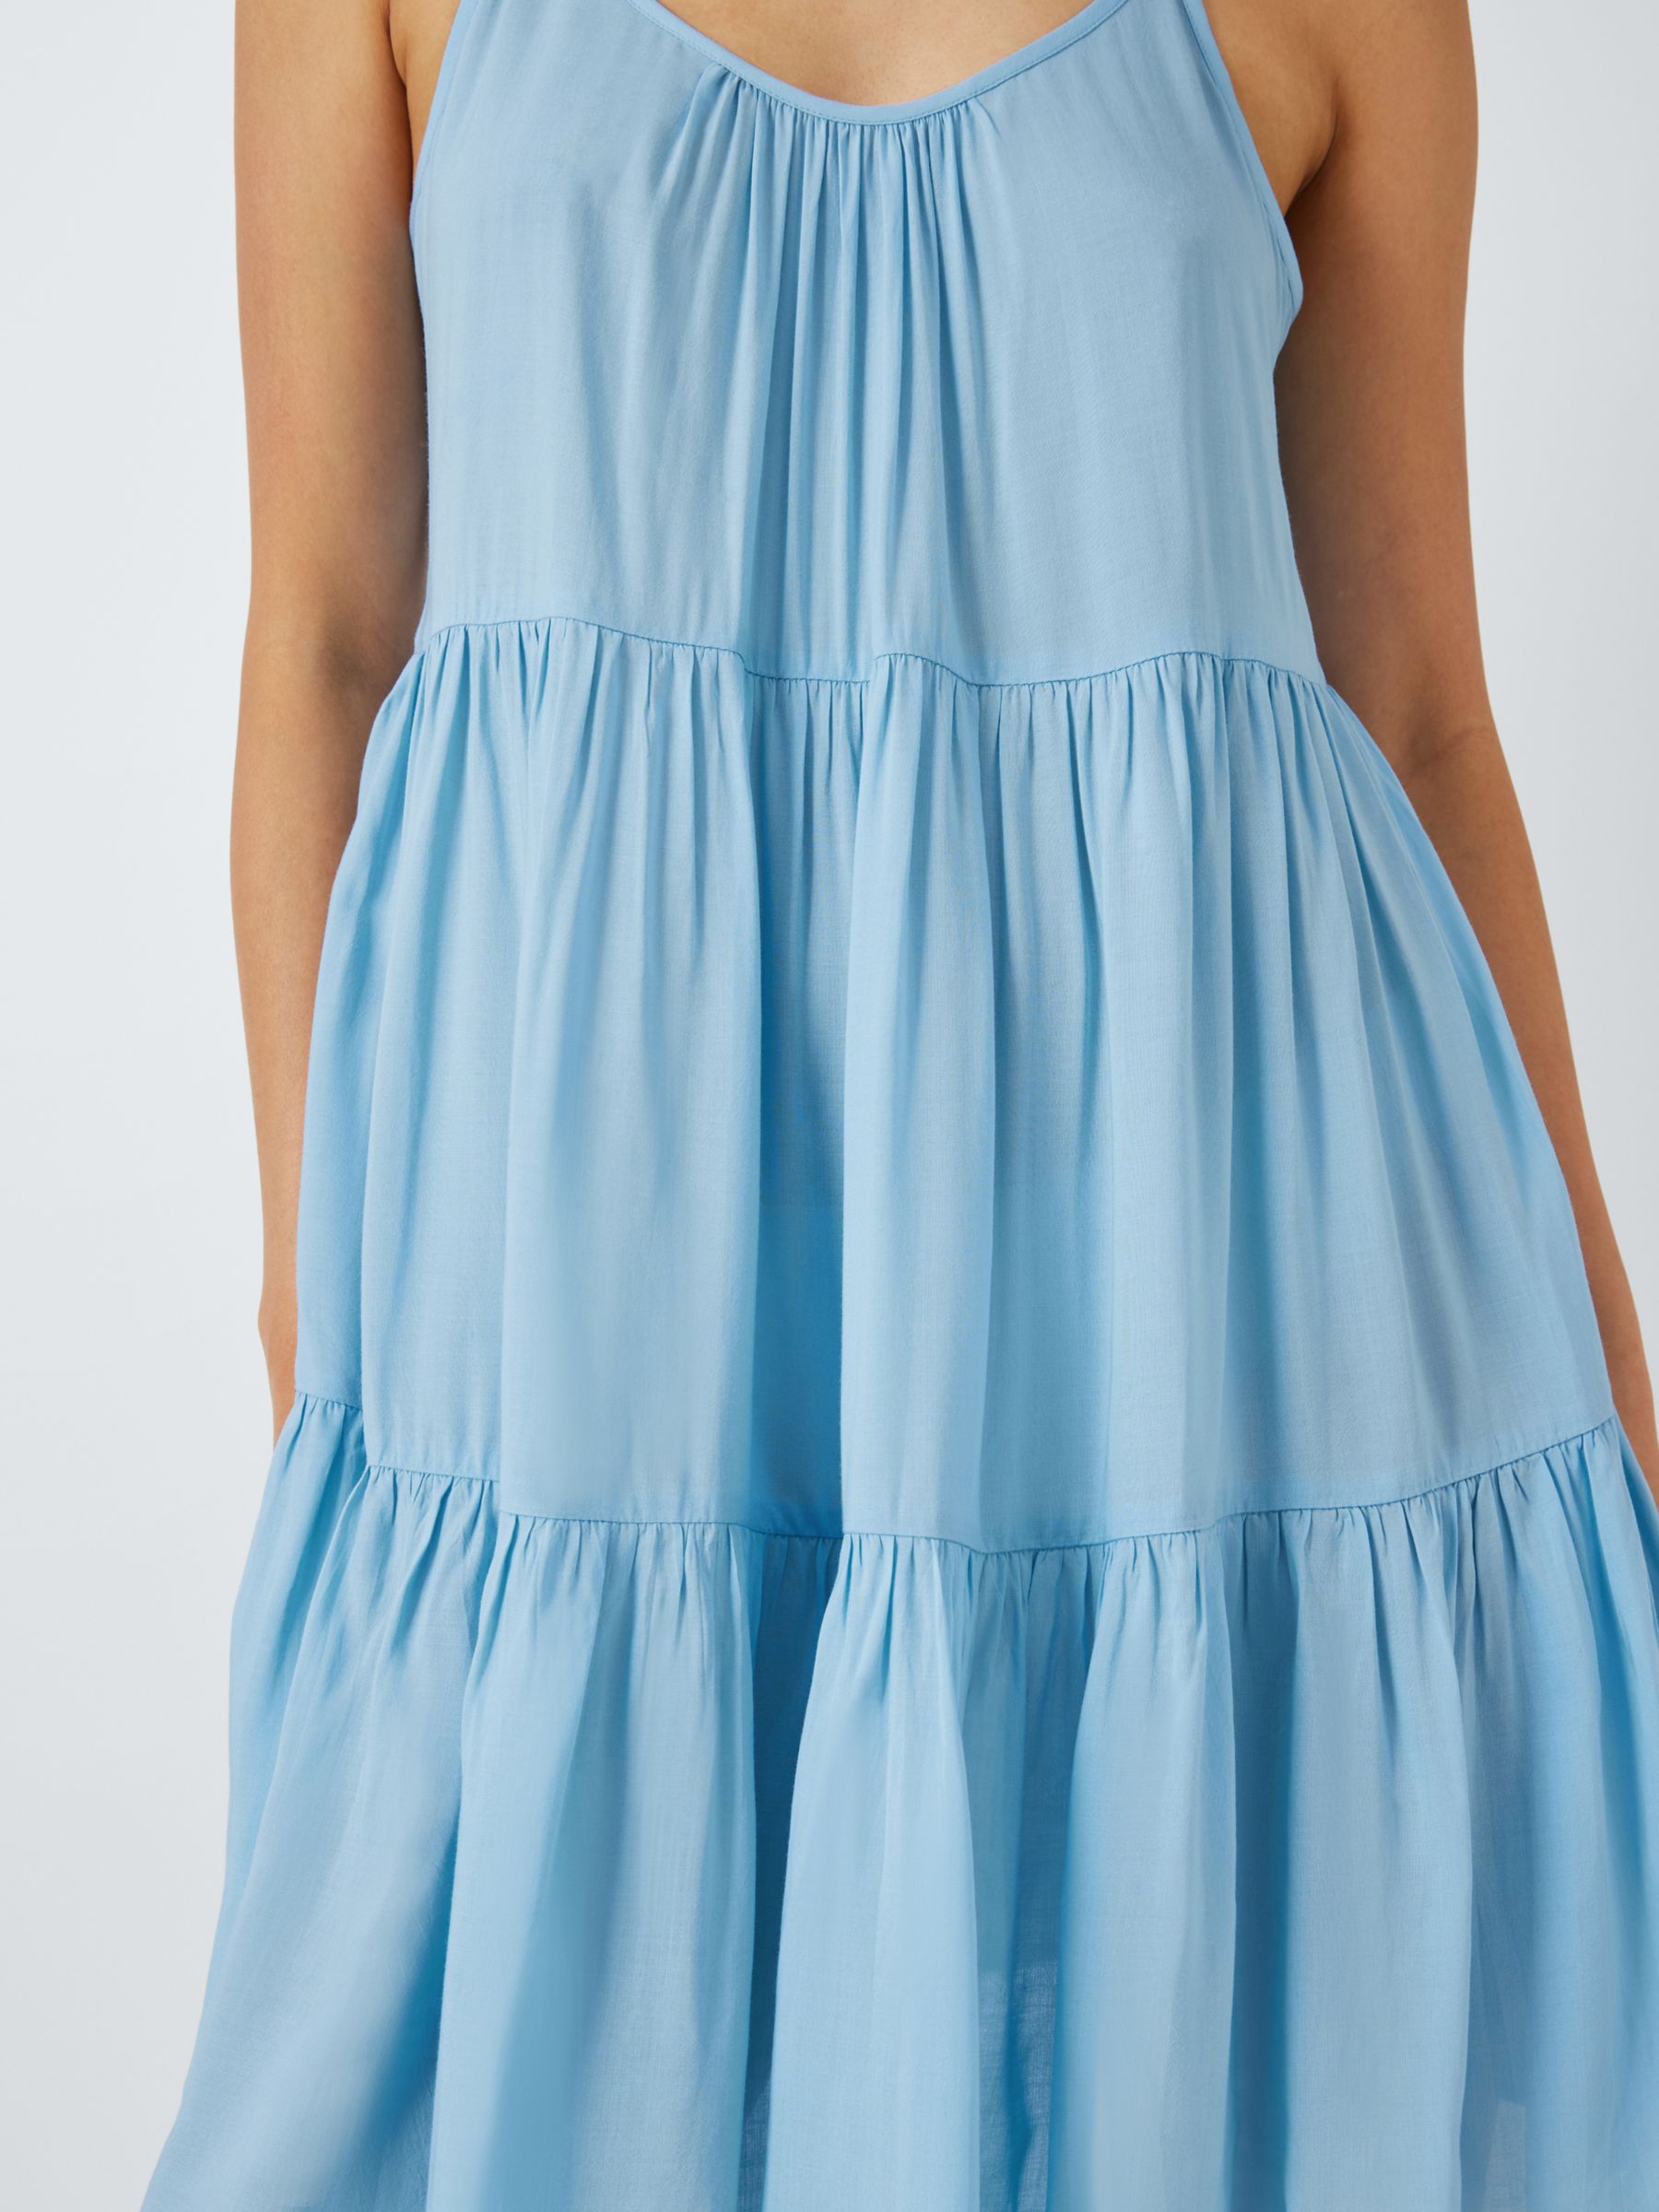 John Lewis ANYDAY Tiered Mini Beach Dress, Mid Blue, L